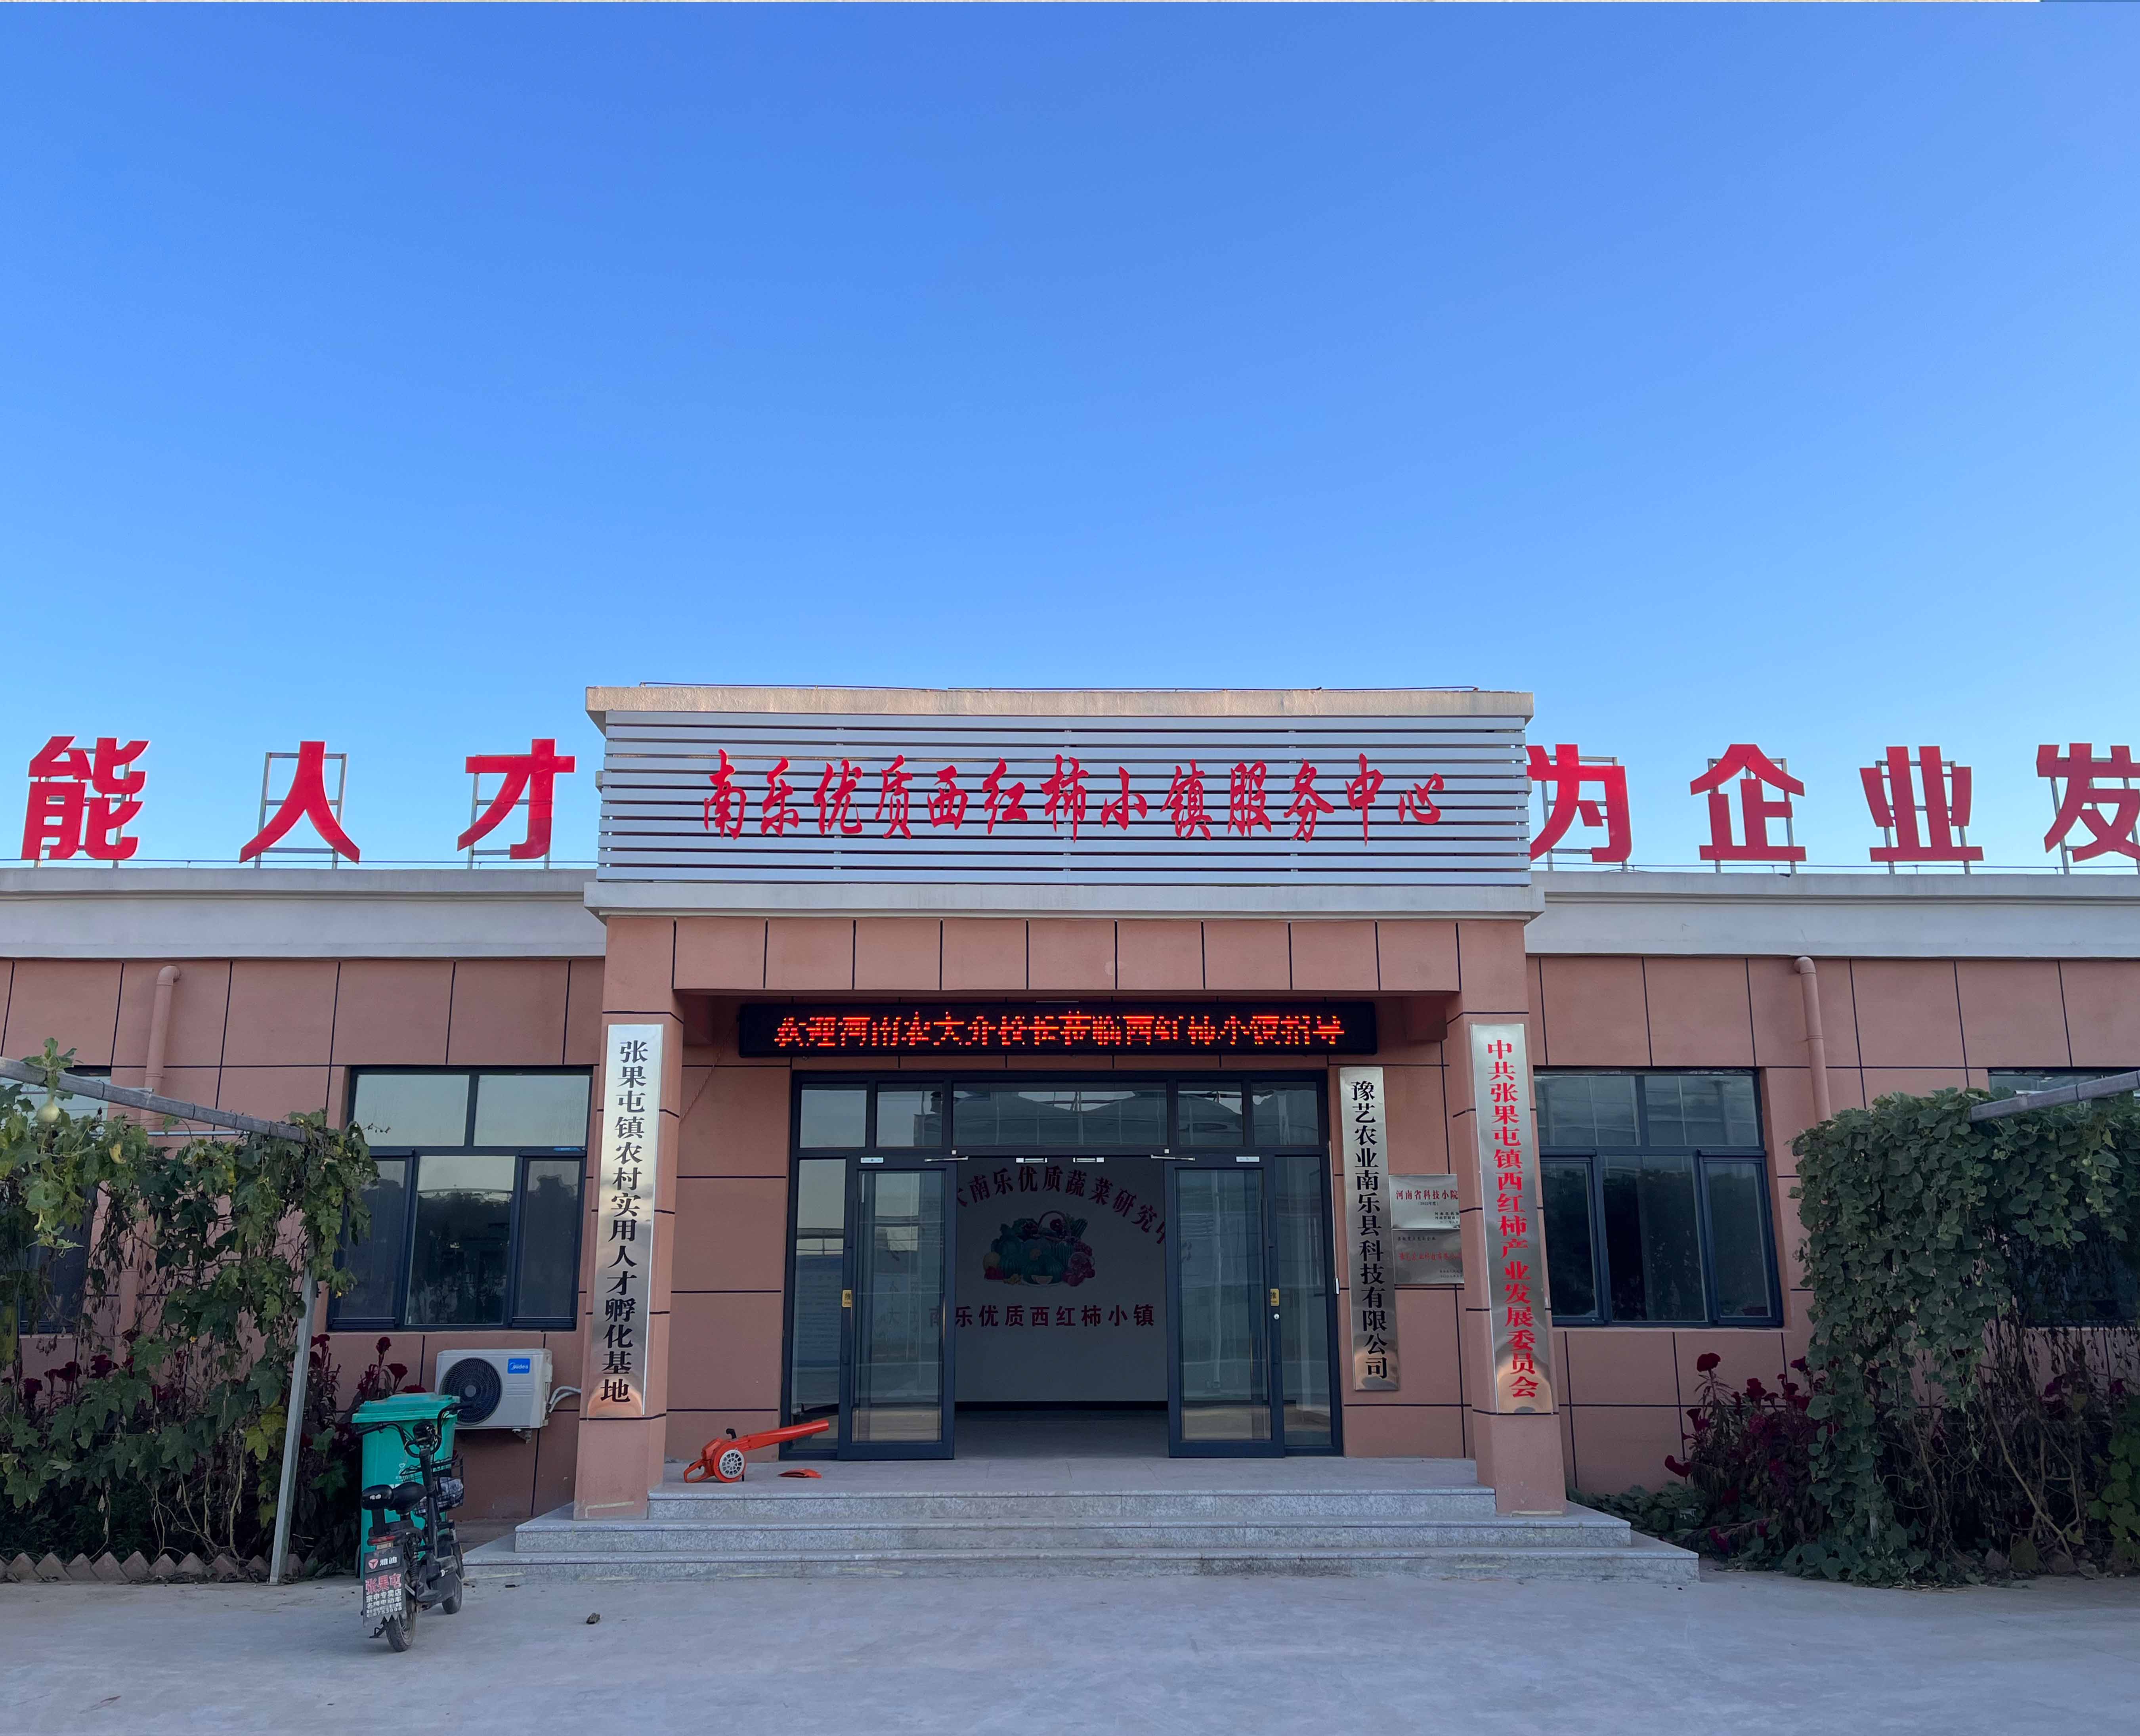 永利总站(中国)有限公司南乐优质蔬菜研究中心